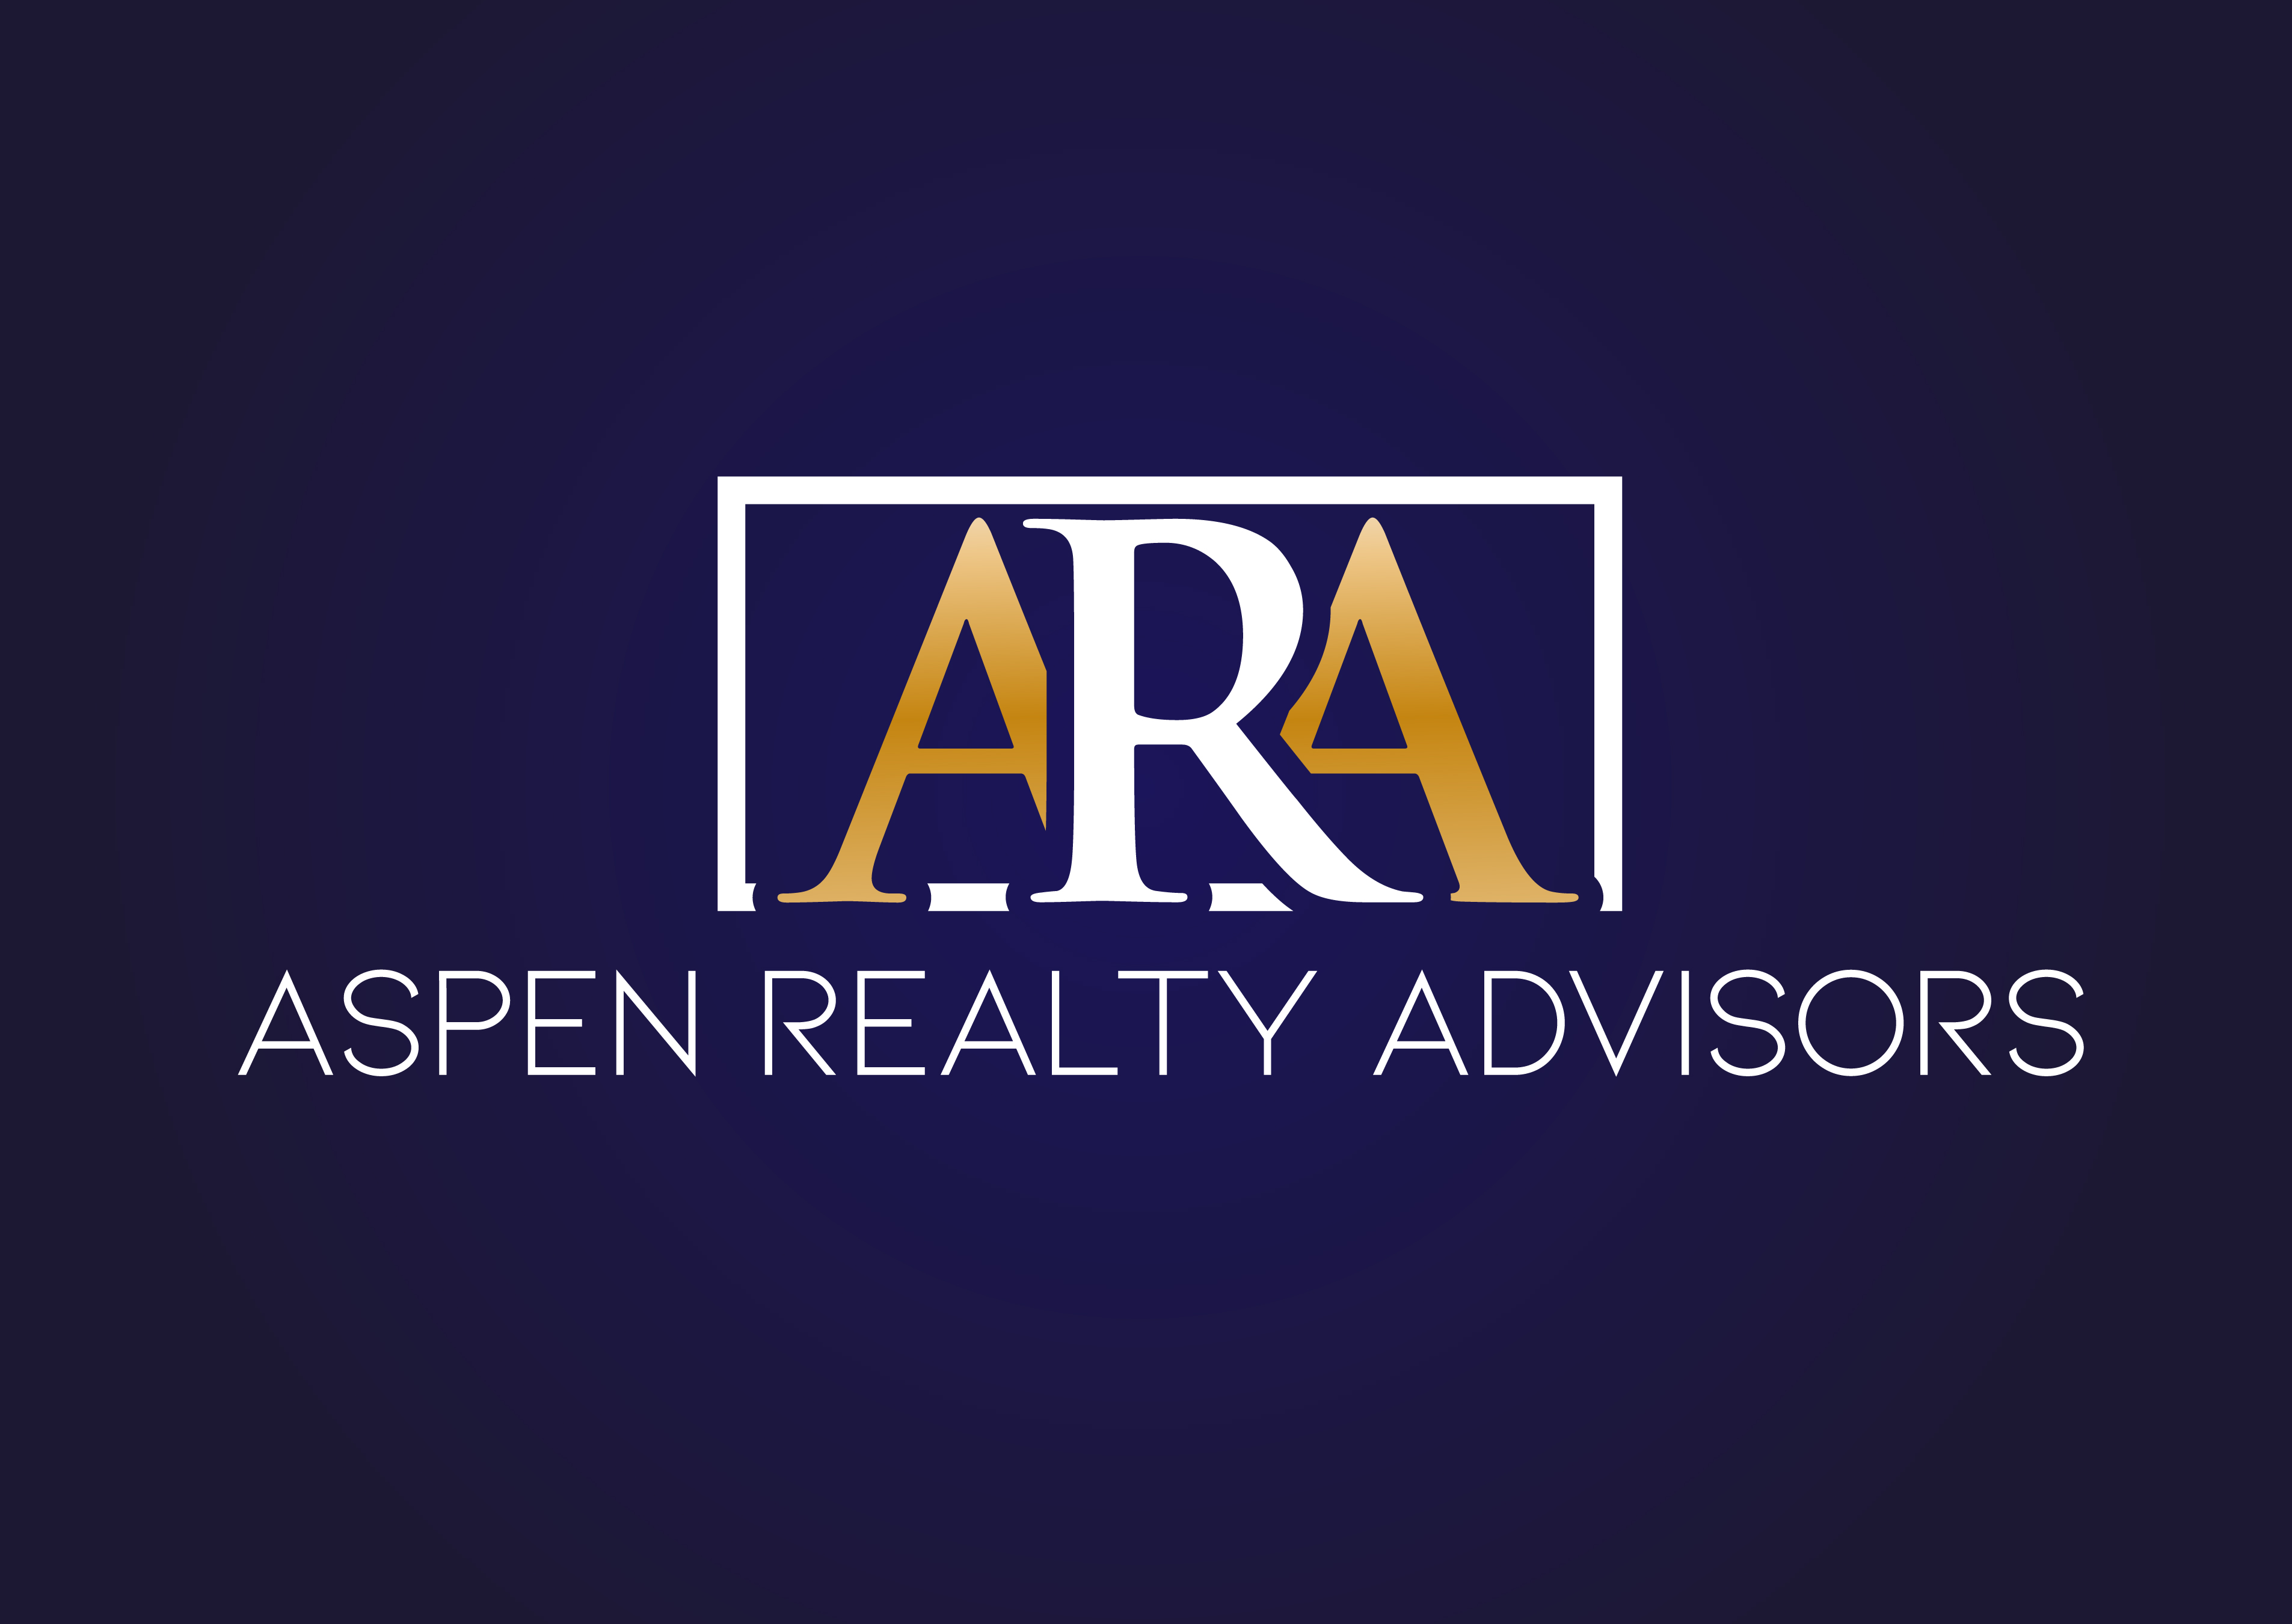 Aspen Realty Advisors